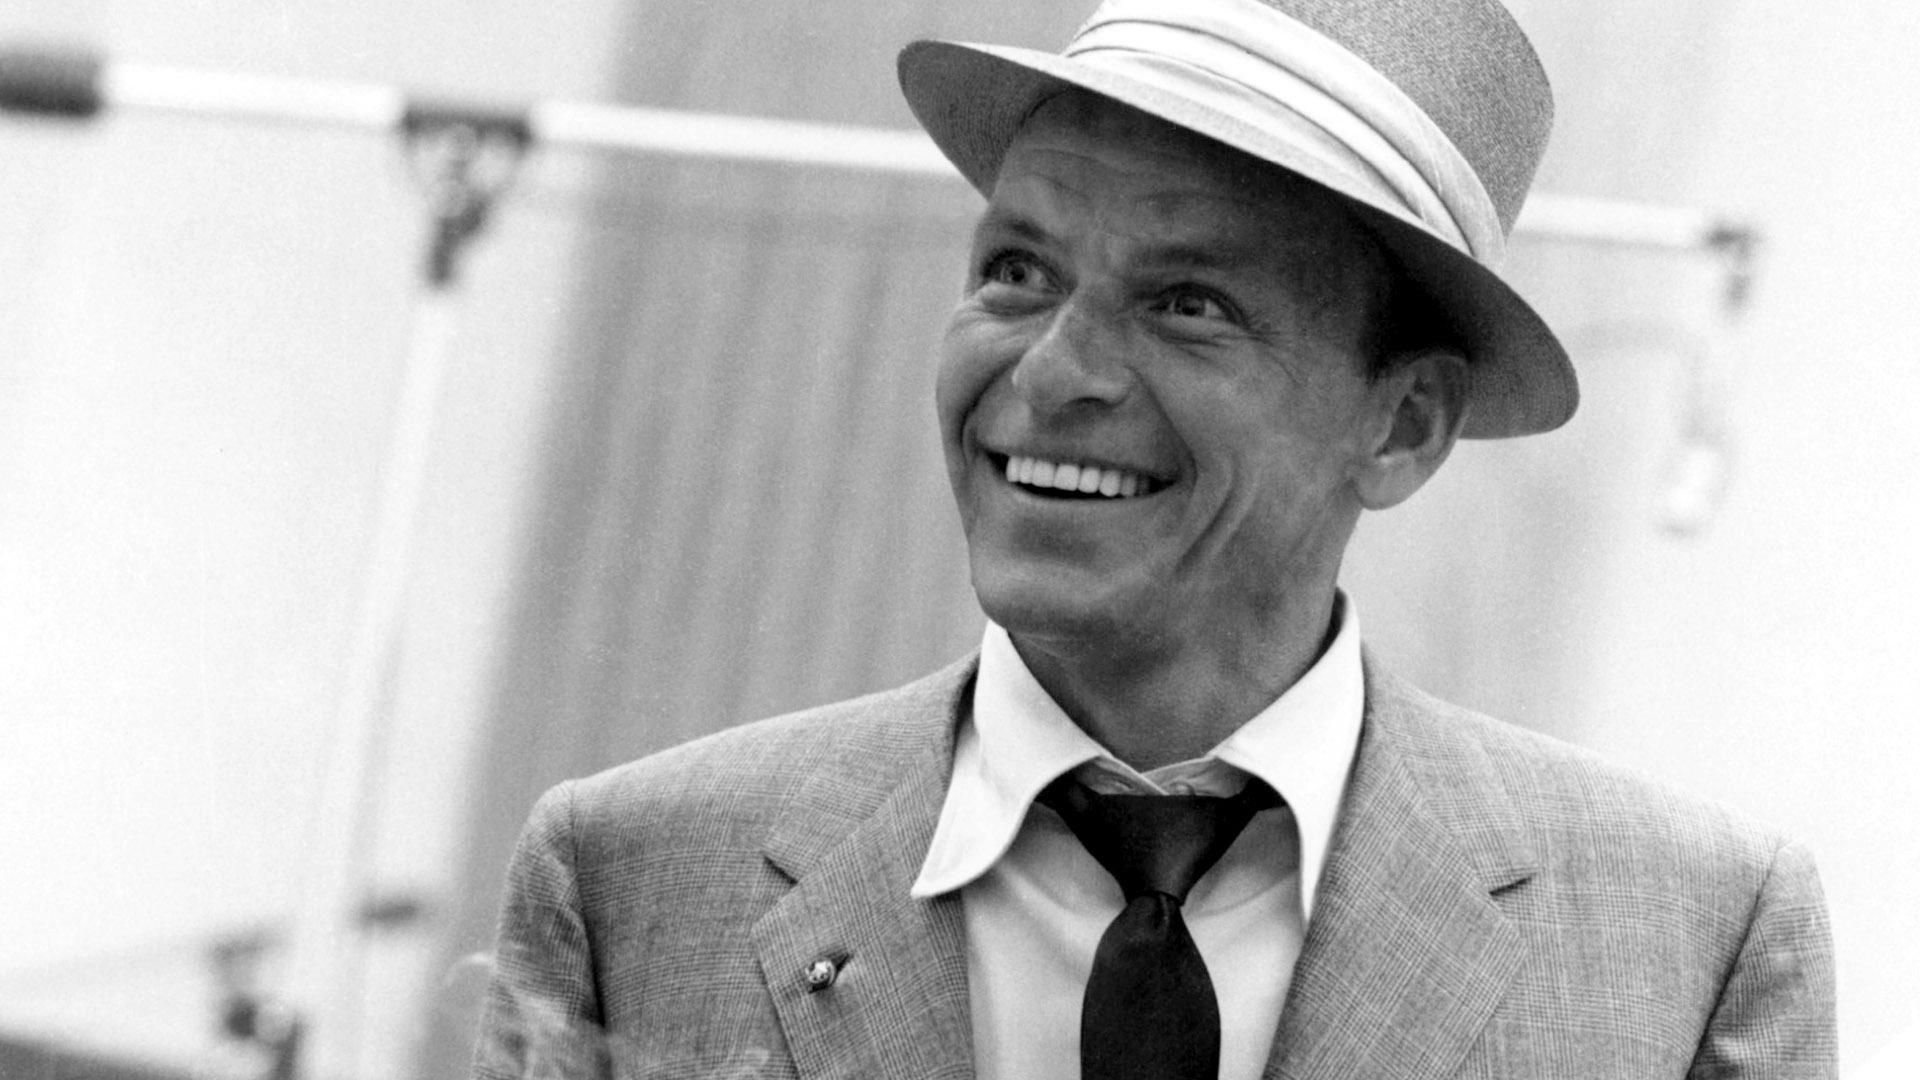 Wallpaper Frank Sinatra Singer The Twentieth Century Retro